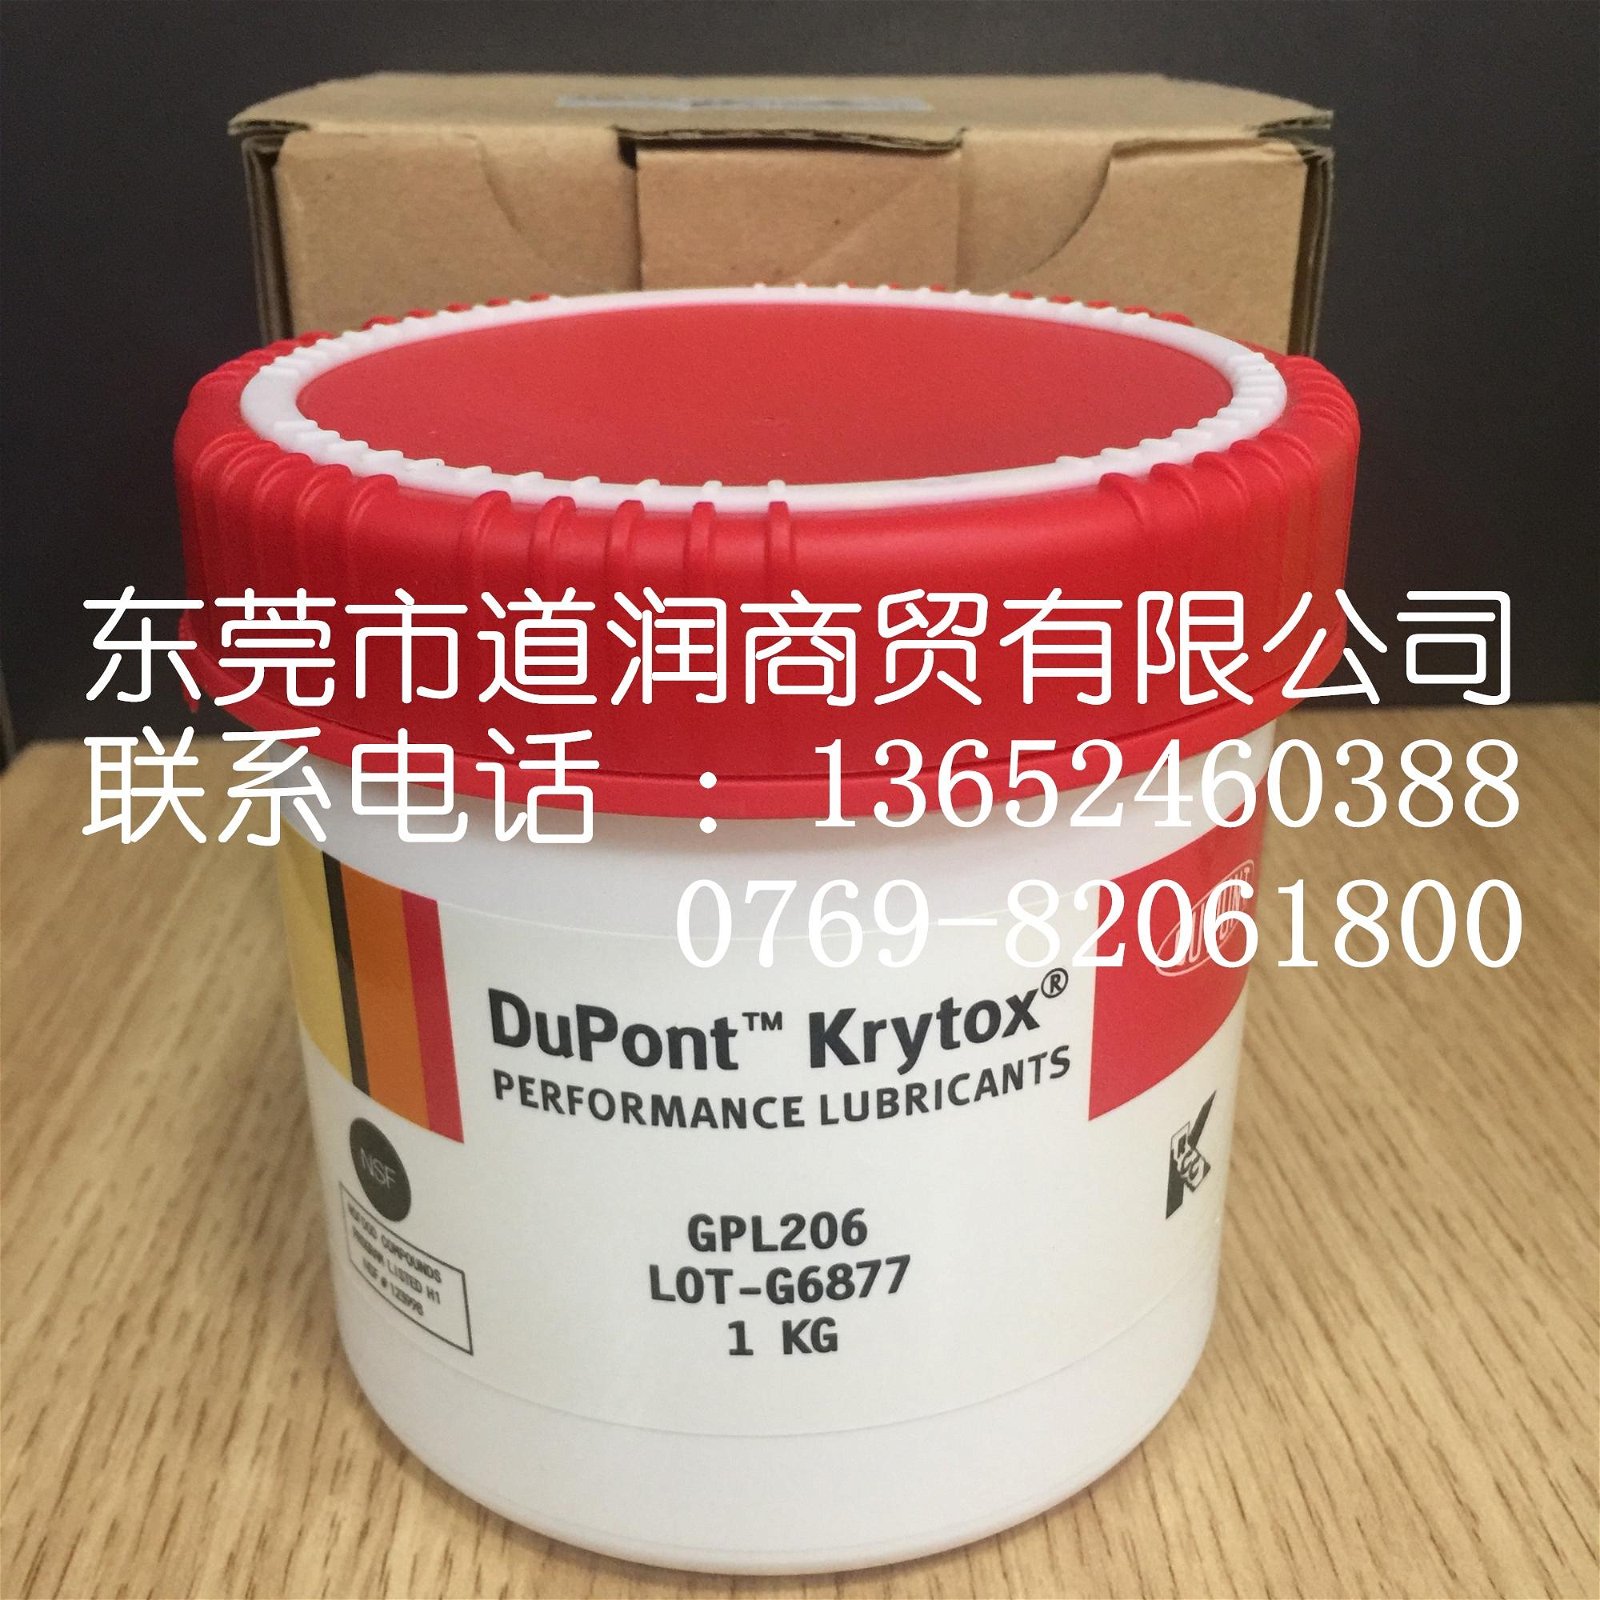 現貨供應美國杜邦Krytox GPL206全氟聚醚潤滑脂 3